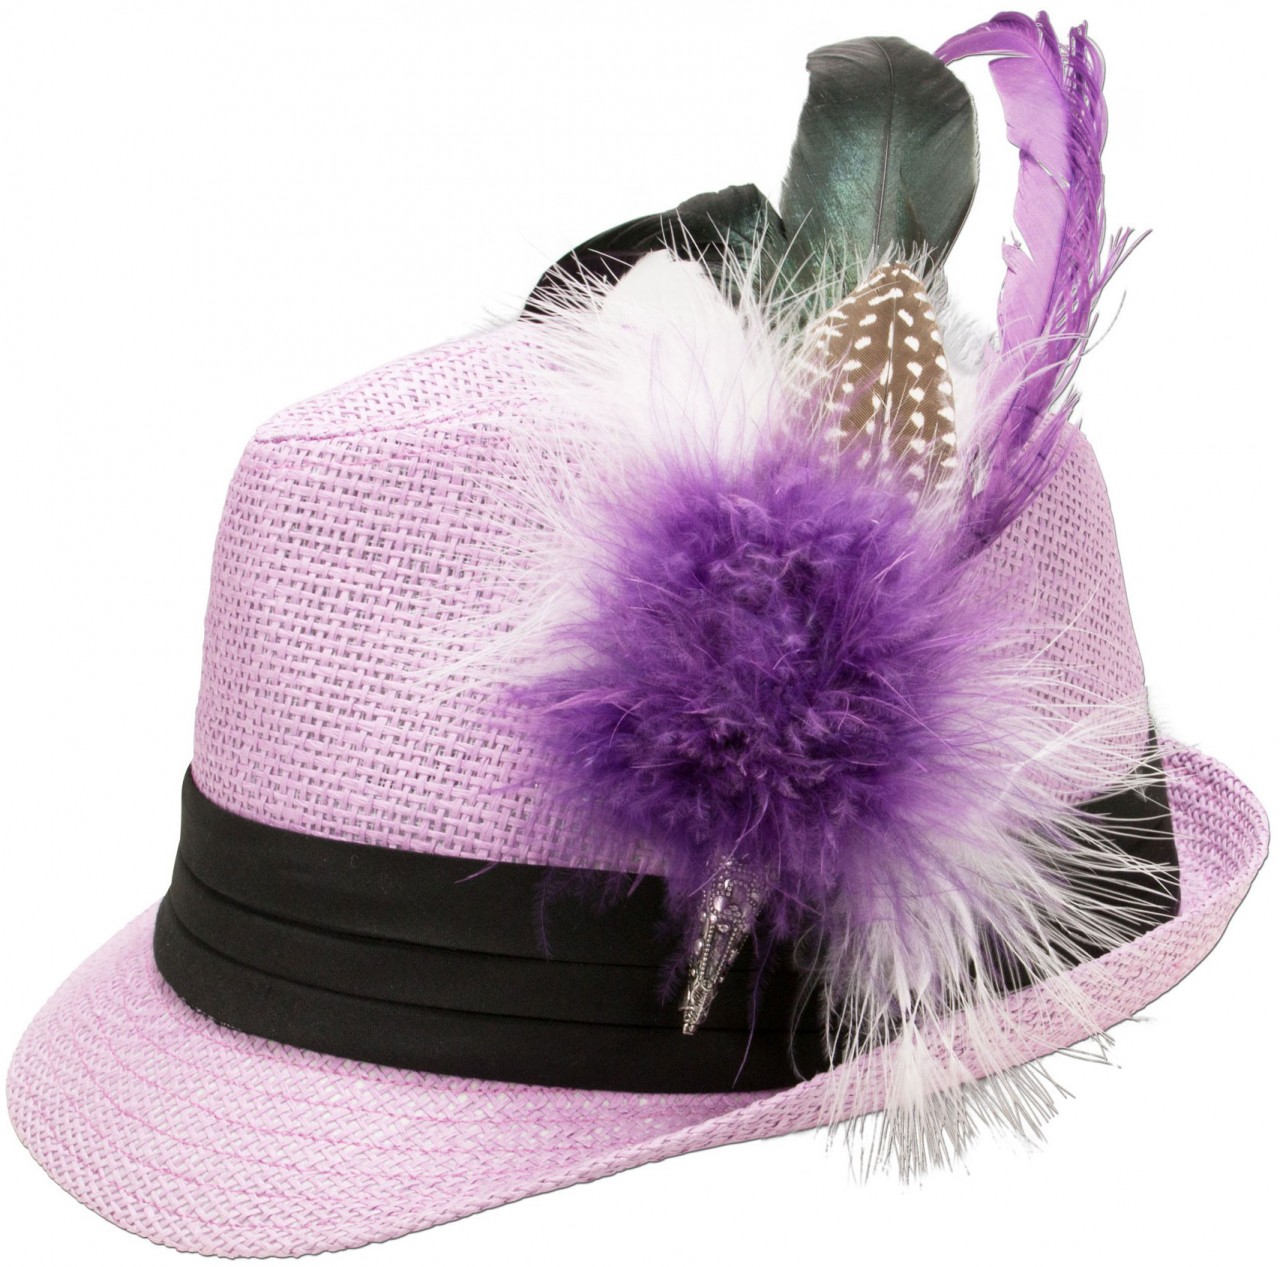 Aperçu: Chapeau de Trachten en paille violet clair